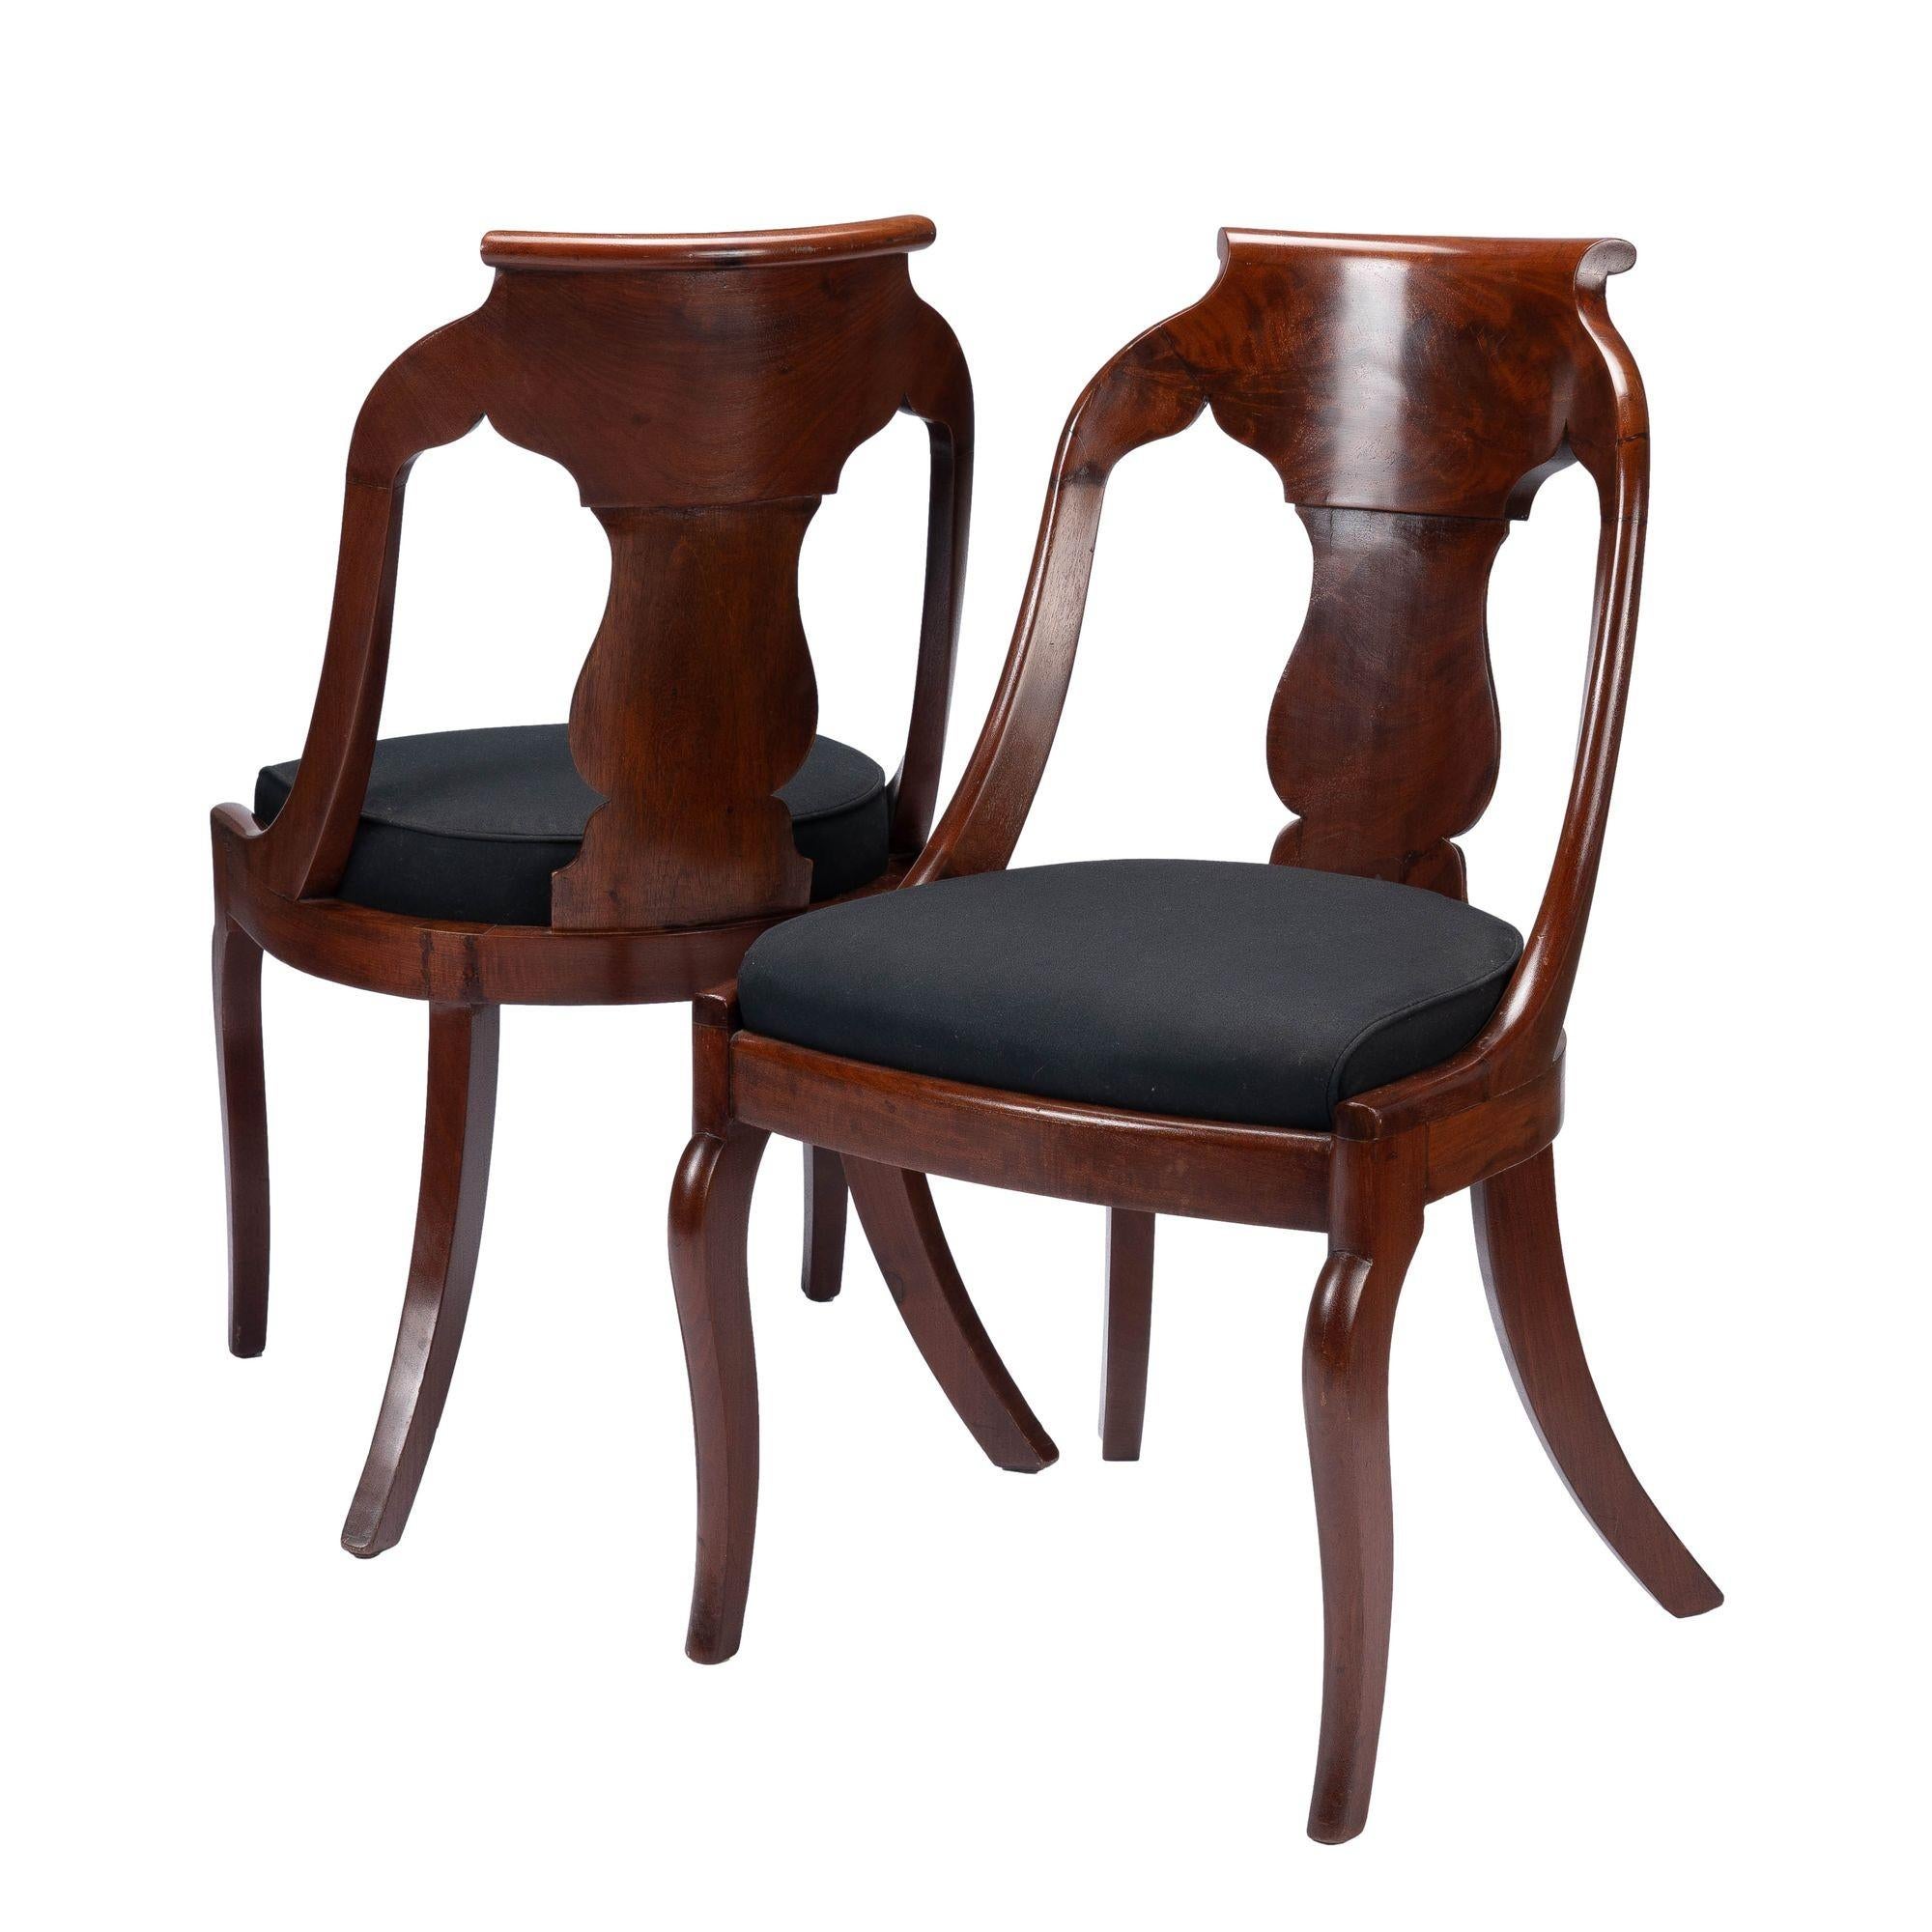 Ein Paar amerikanischer neoklassischer Gondelstühle aus Mahagoni und gemasertem Mahagoni, furniert mit rutschfestem Sitz, im Stil der französischen Restauration.  Der kastenförmige Schlupfsitz ist auf einem gebogenen Mahagoni-Vordersitzrahmen auf